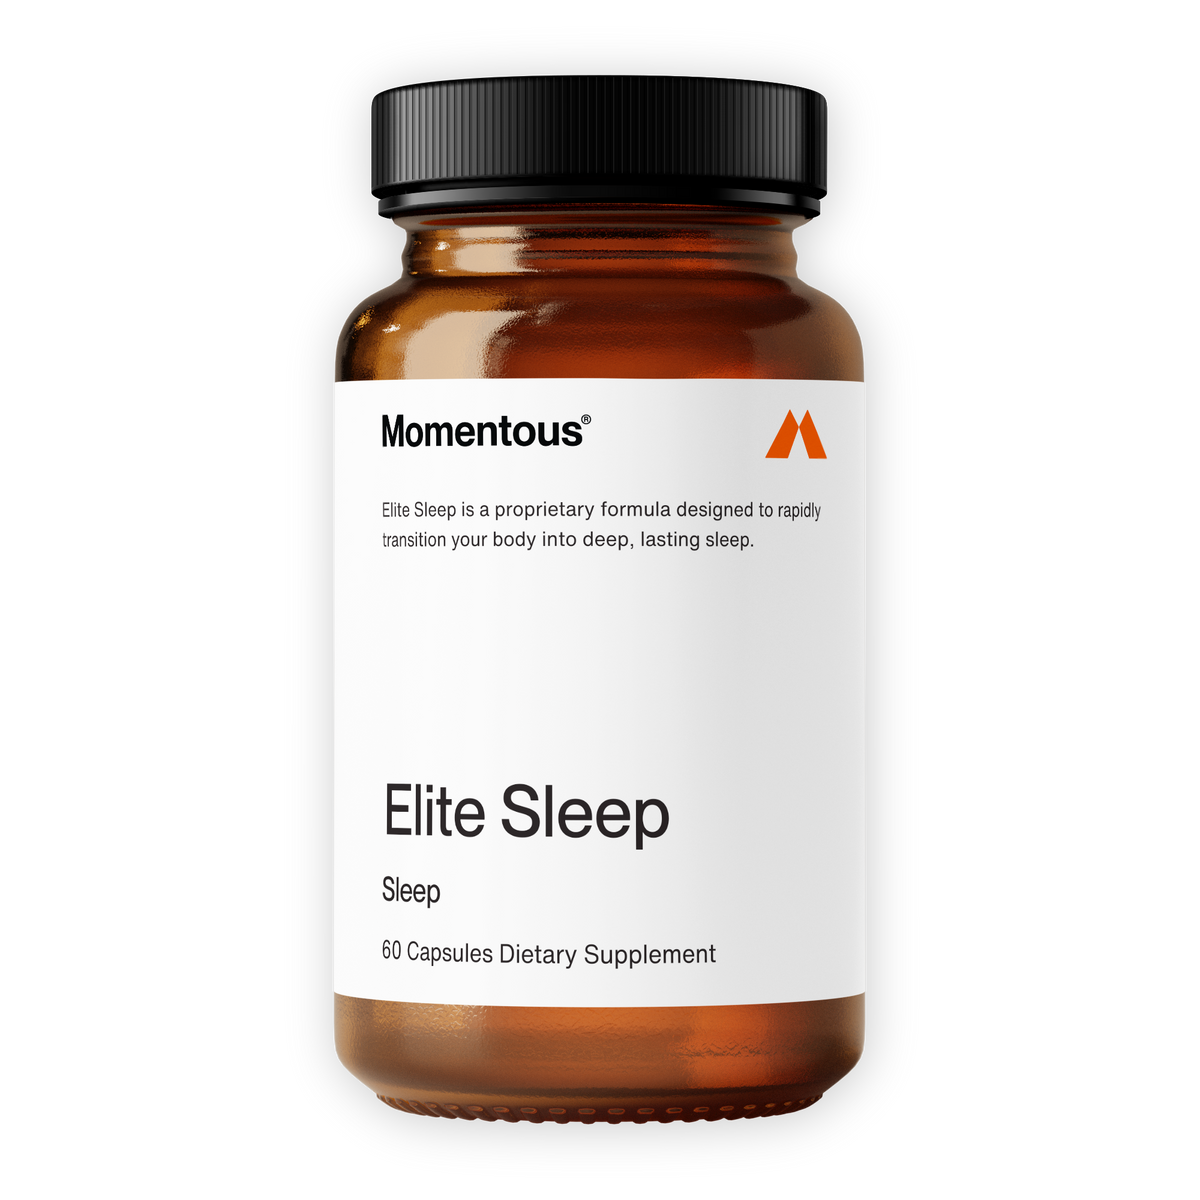 Elite Sleep